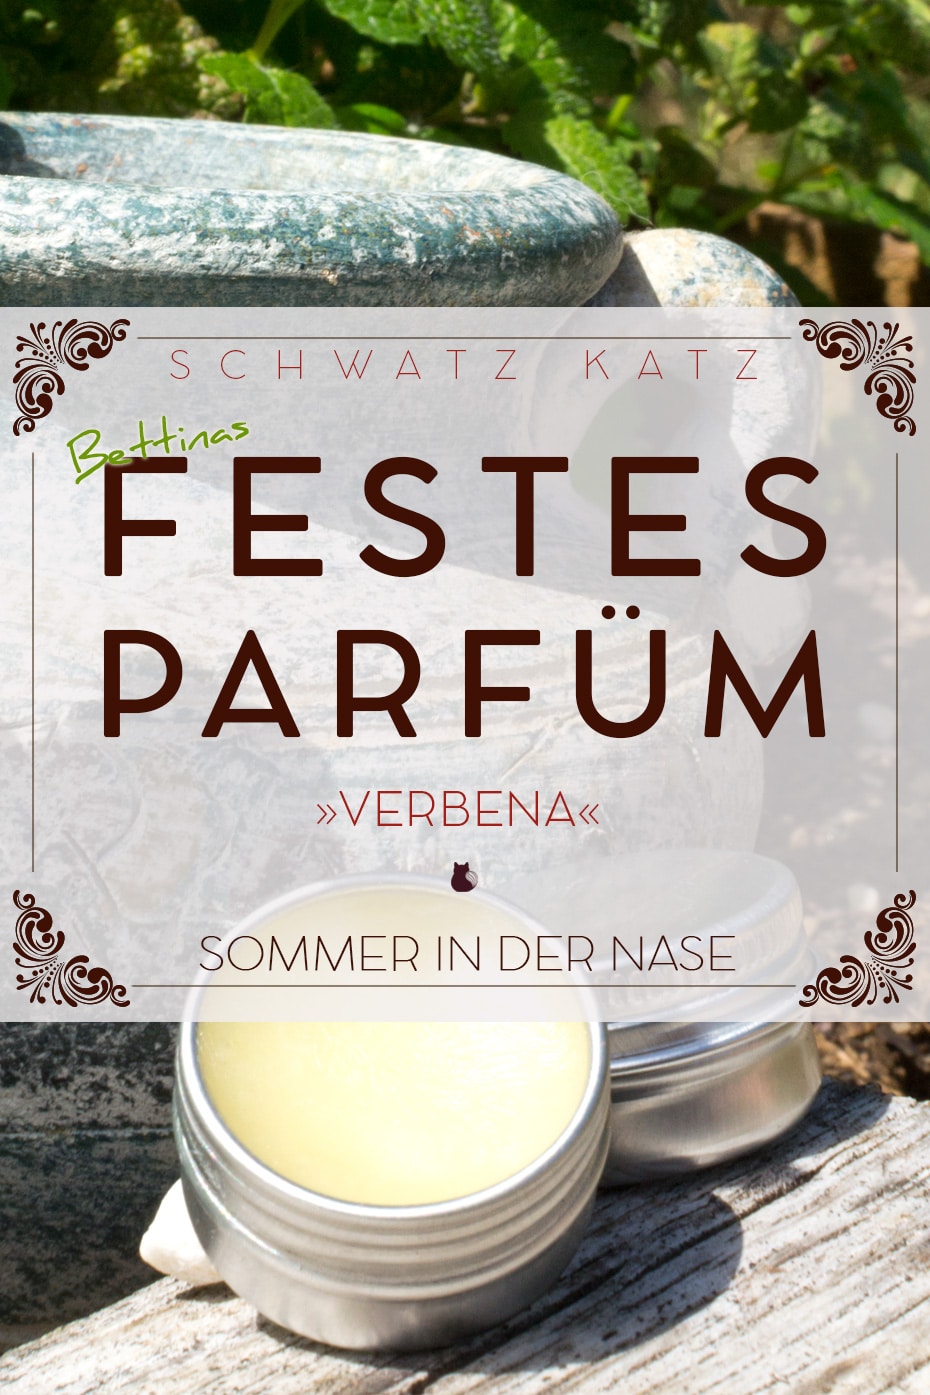 Festes Sommerparfüm »Verbena« mit frischer Duftmischung | Schwatz Katz